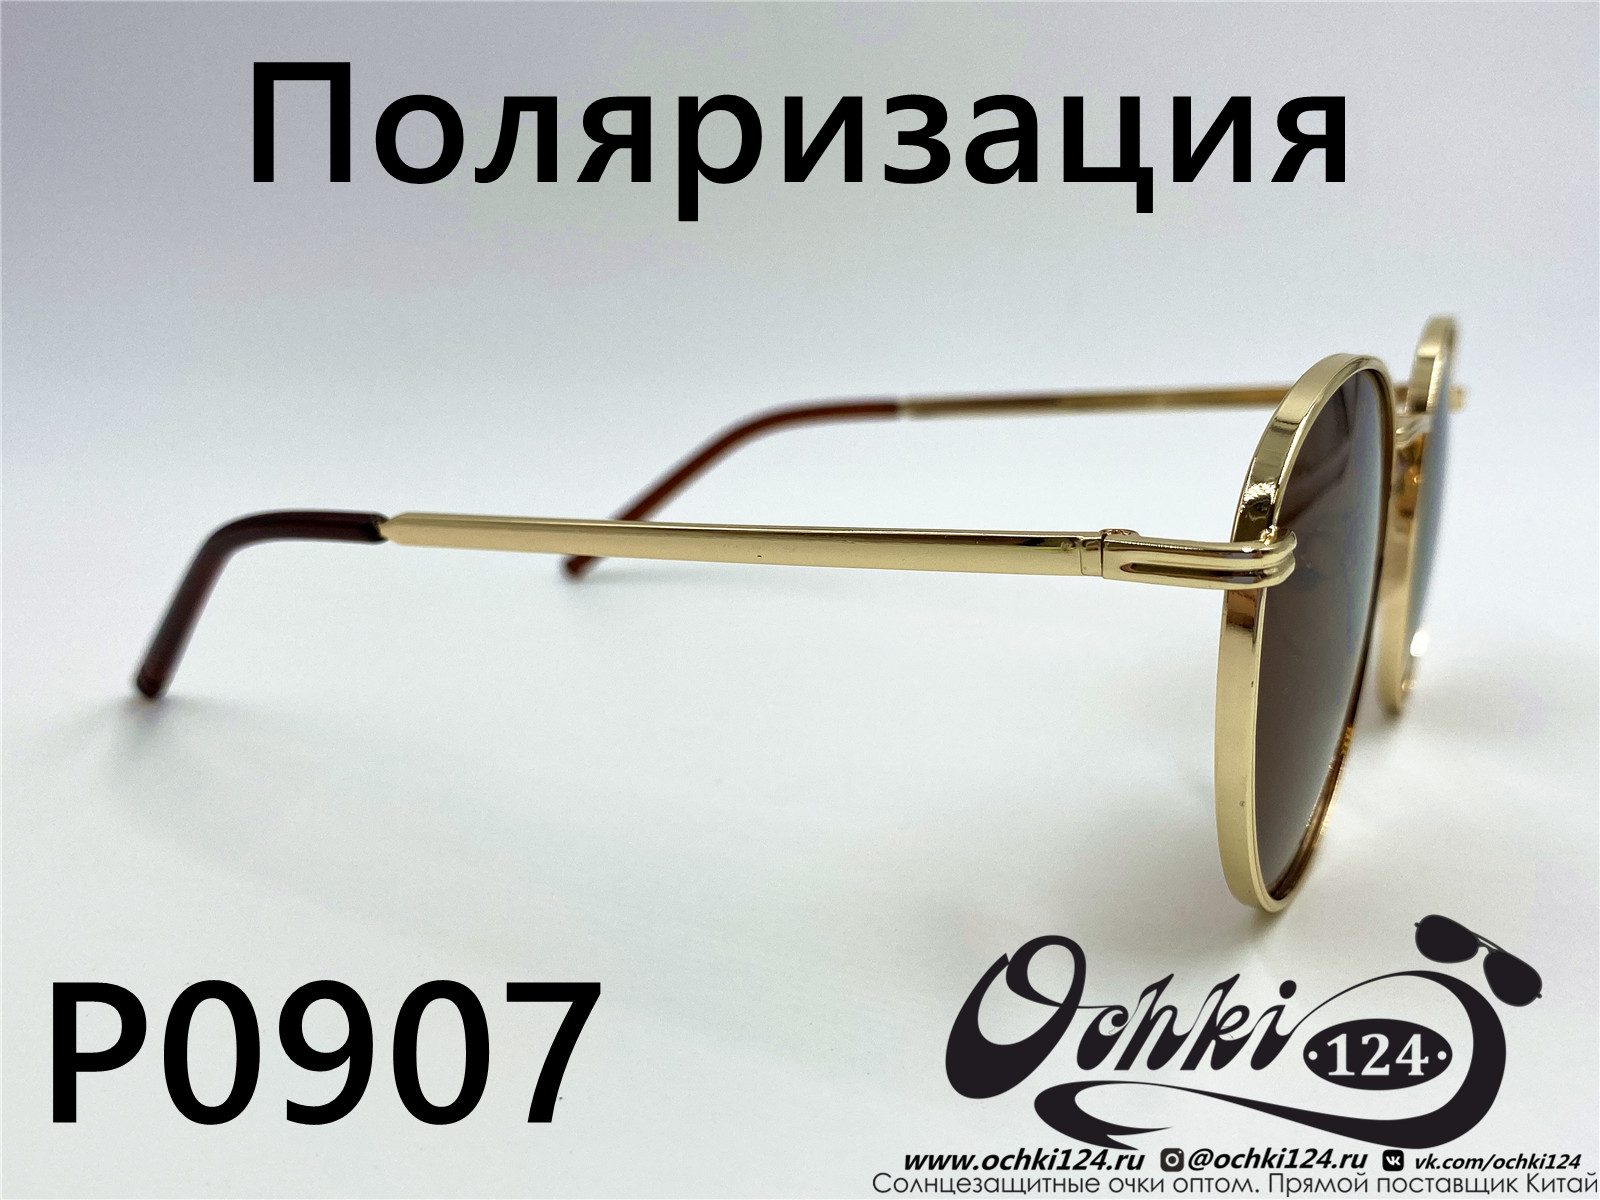  Солнцезащитные очки картинка 2022 Женские Поляризованные Круглые  P0907-2 